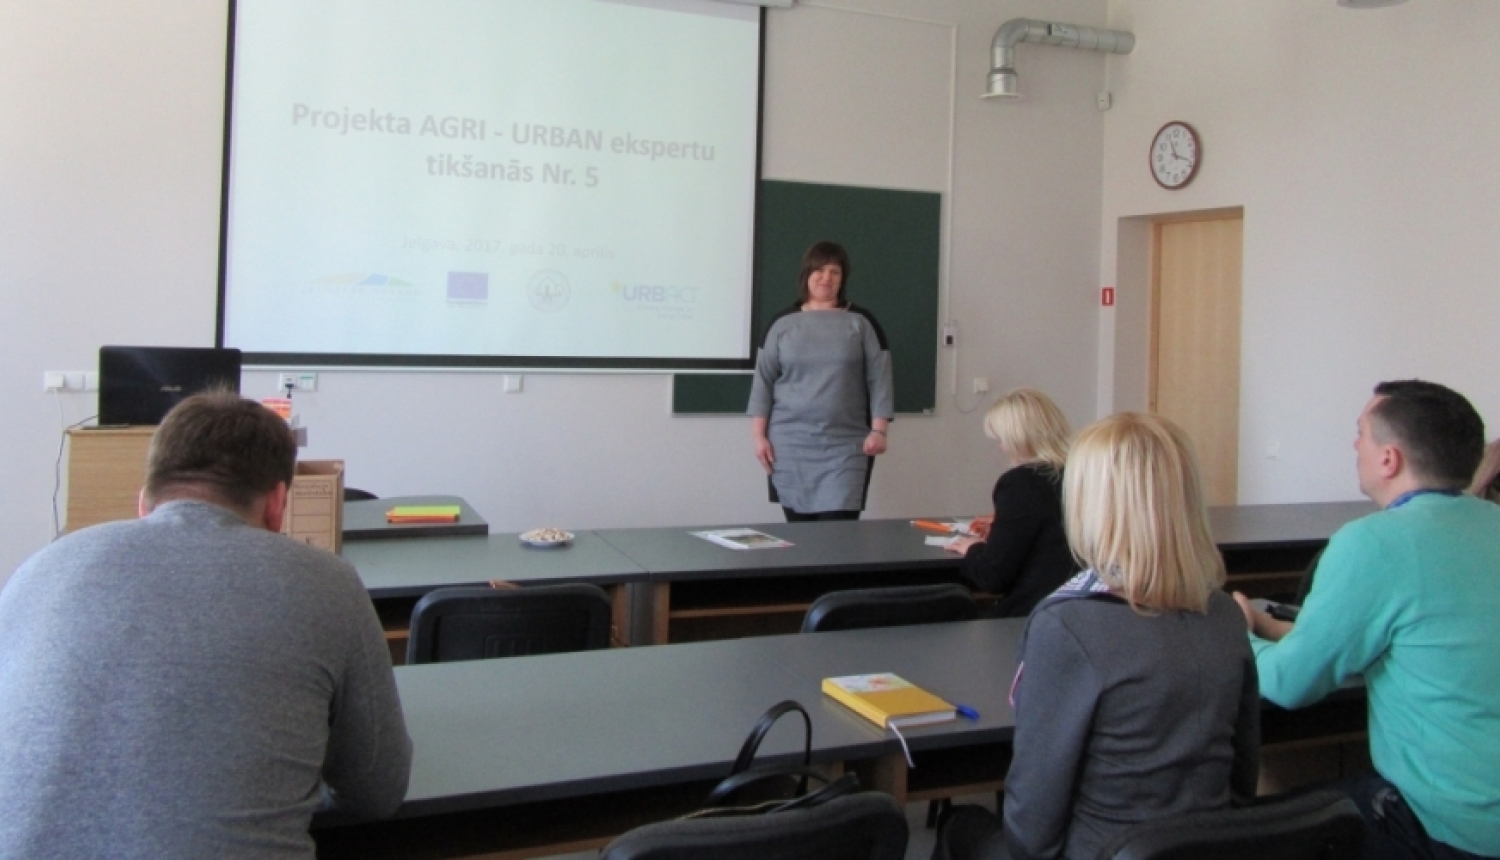 Projekta AGRI-URBAN piektā ekspertu tikšanās Latvijas Lauksaimniecības universitātes Pārtikas Tehnoloģiju fakultātē